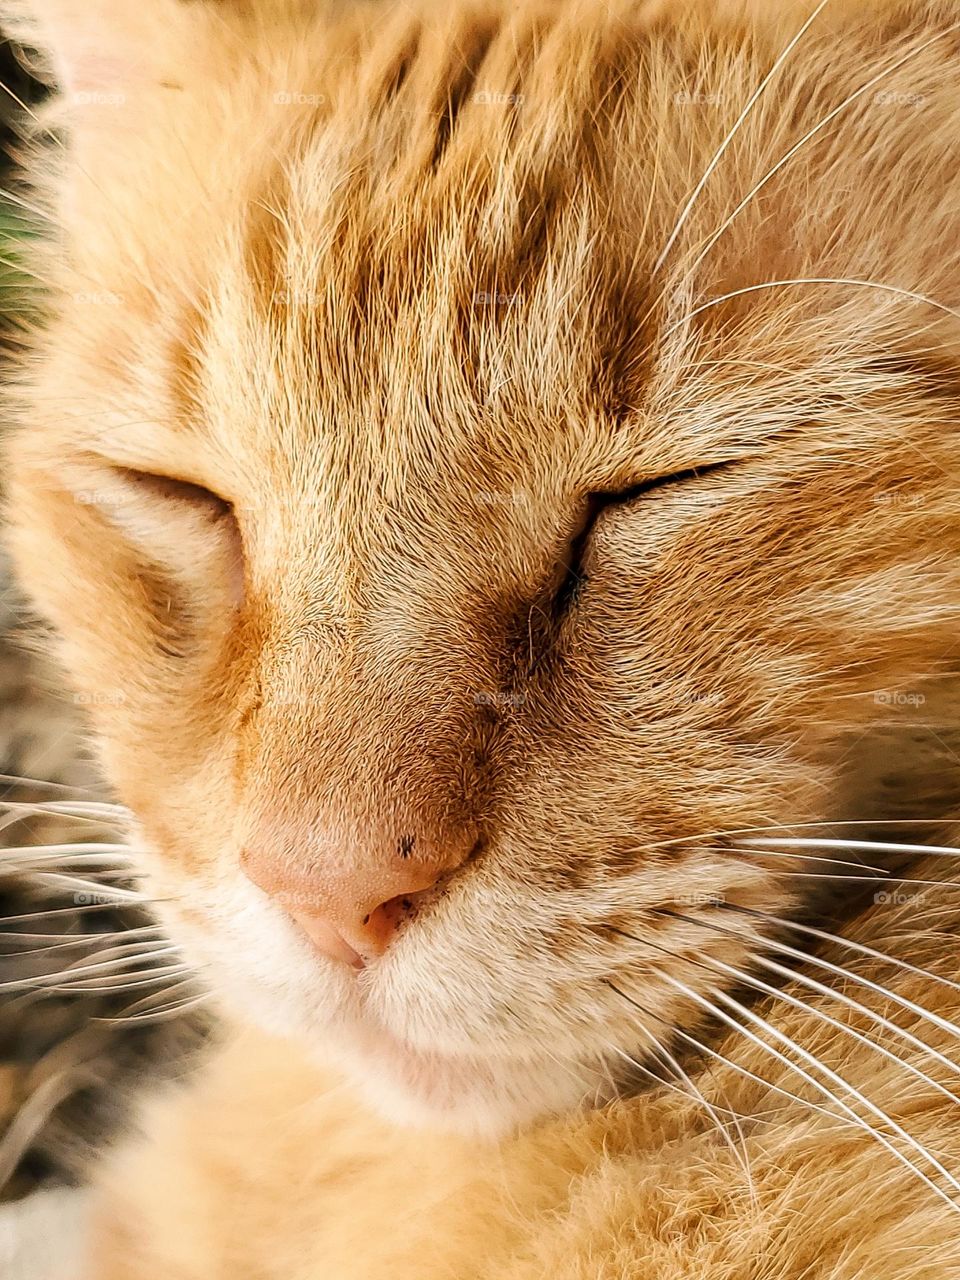 Portrait of a sleeping orange tabby cat.